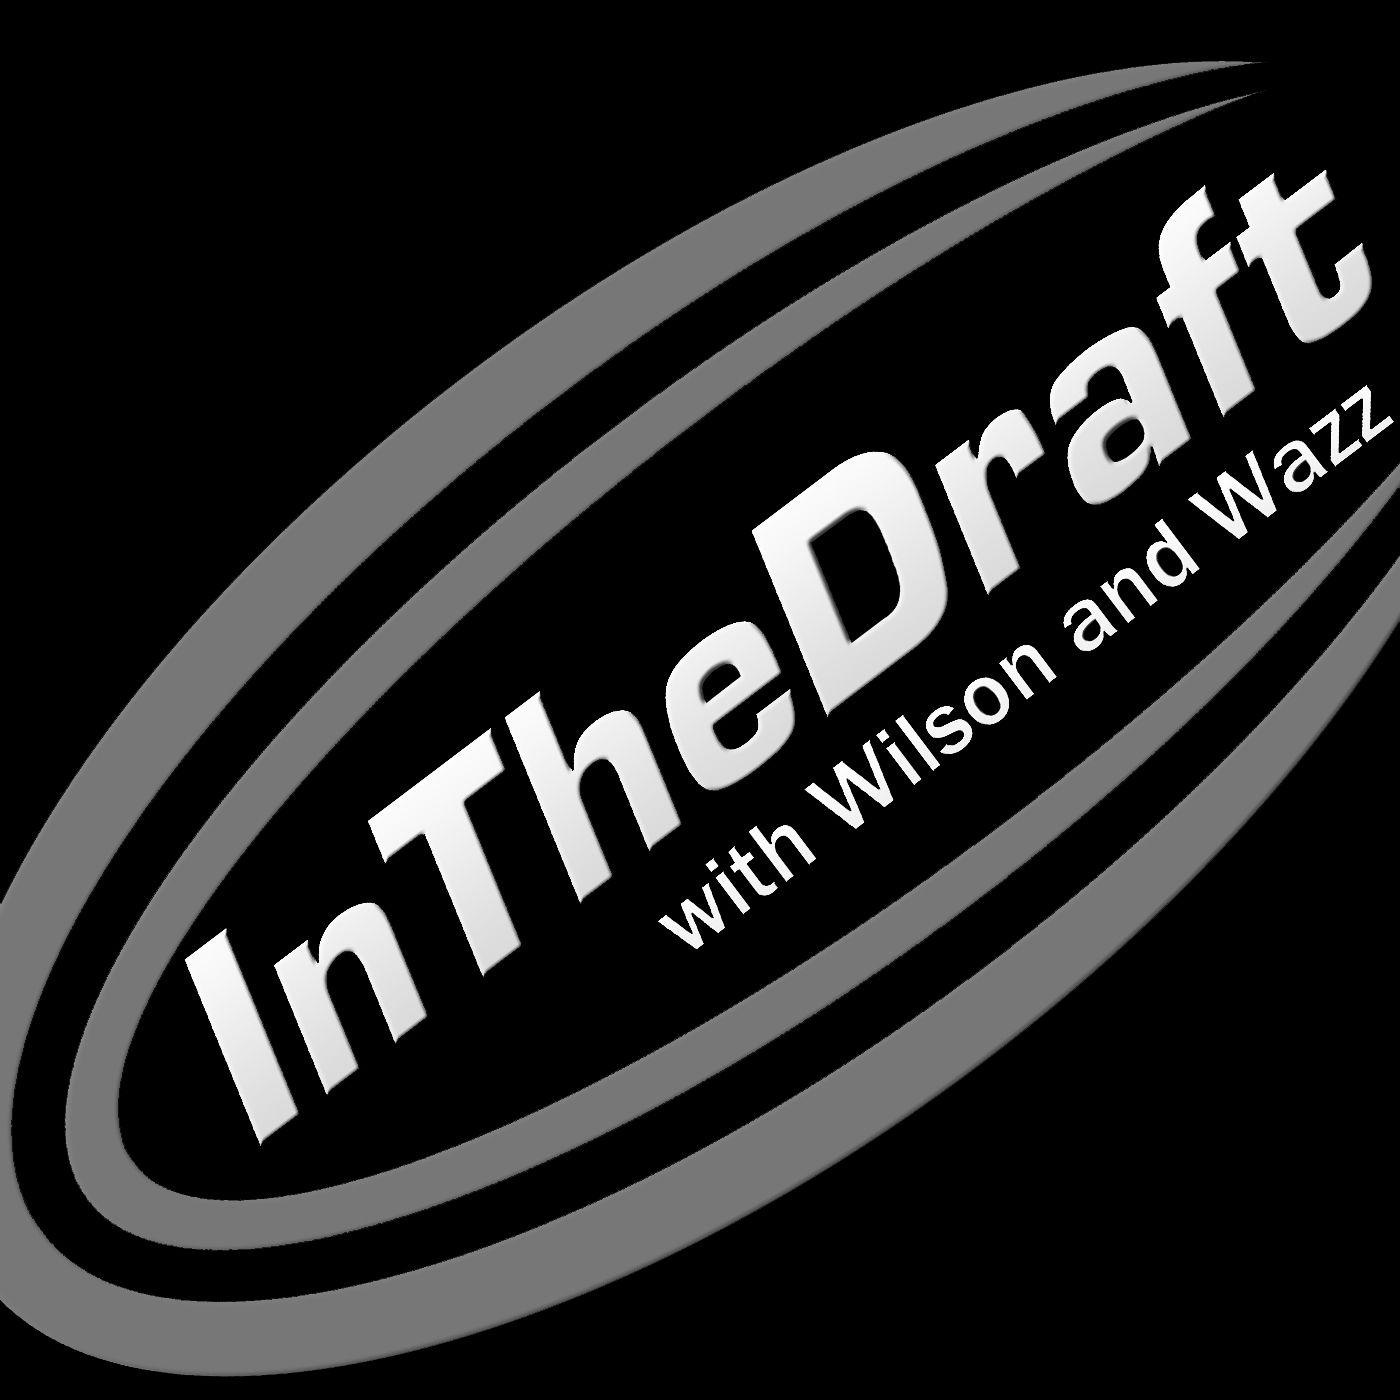 In The Draft Show – NASCAR Talk